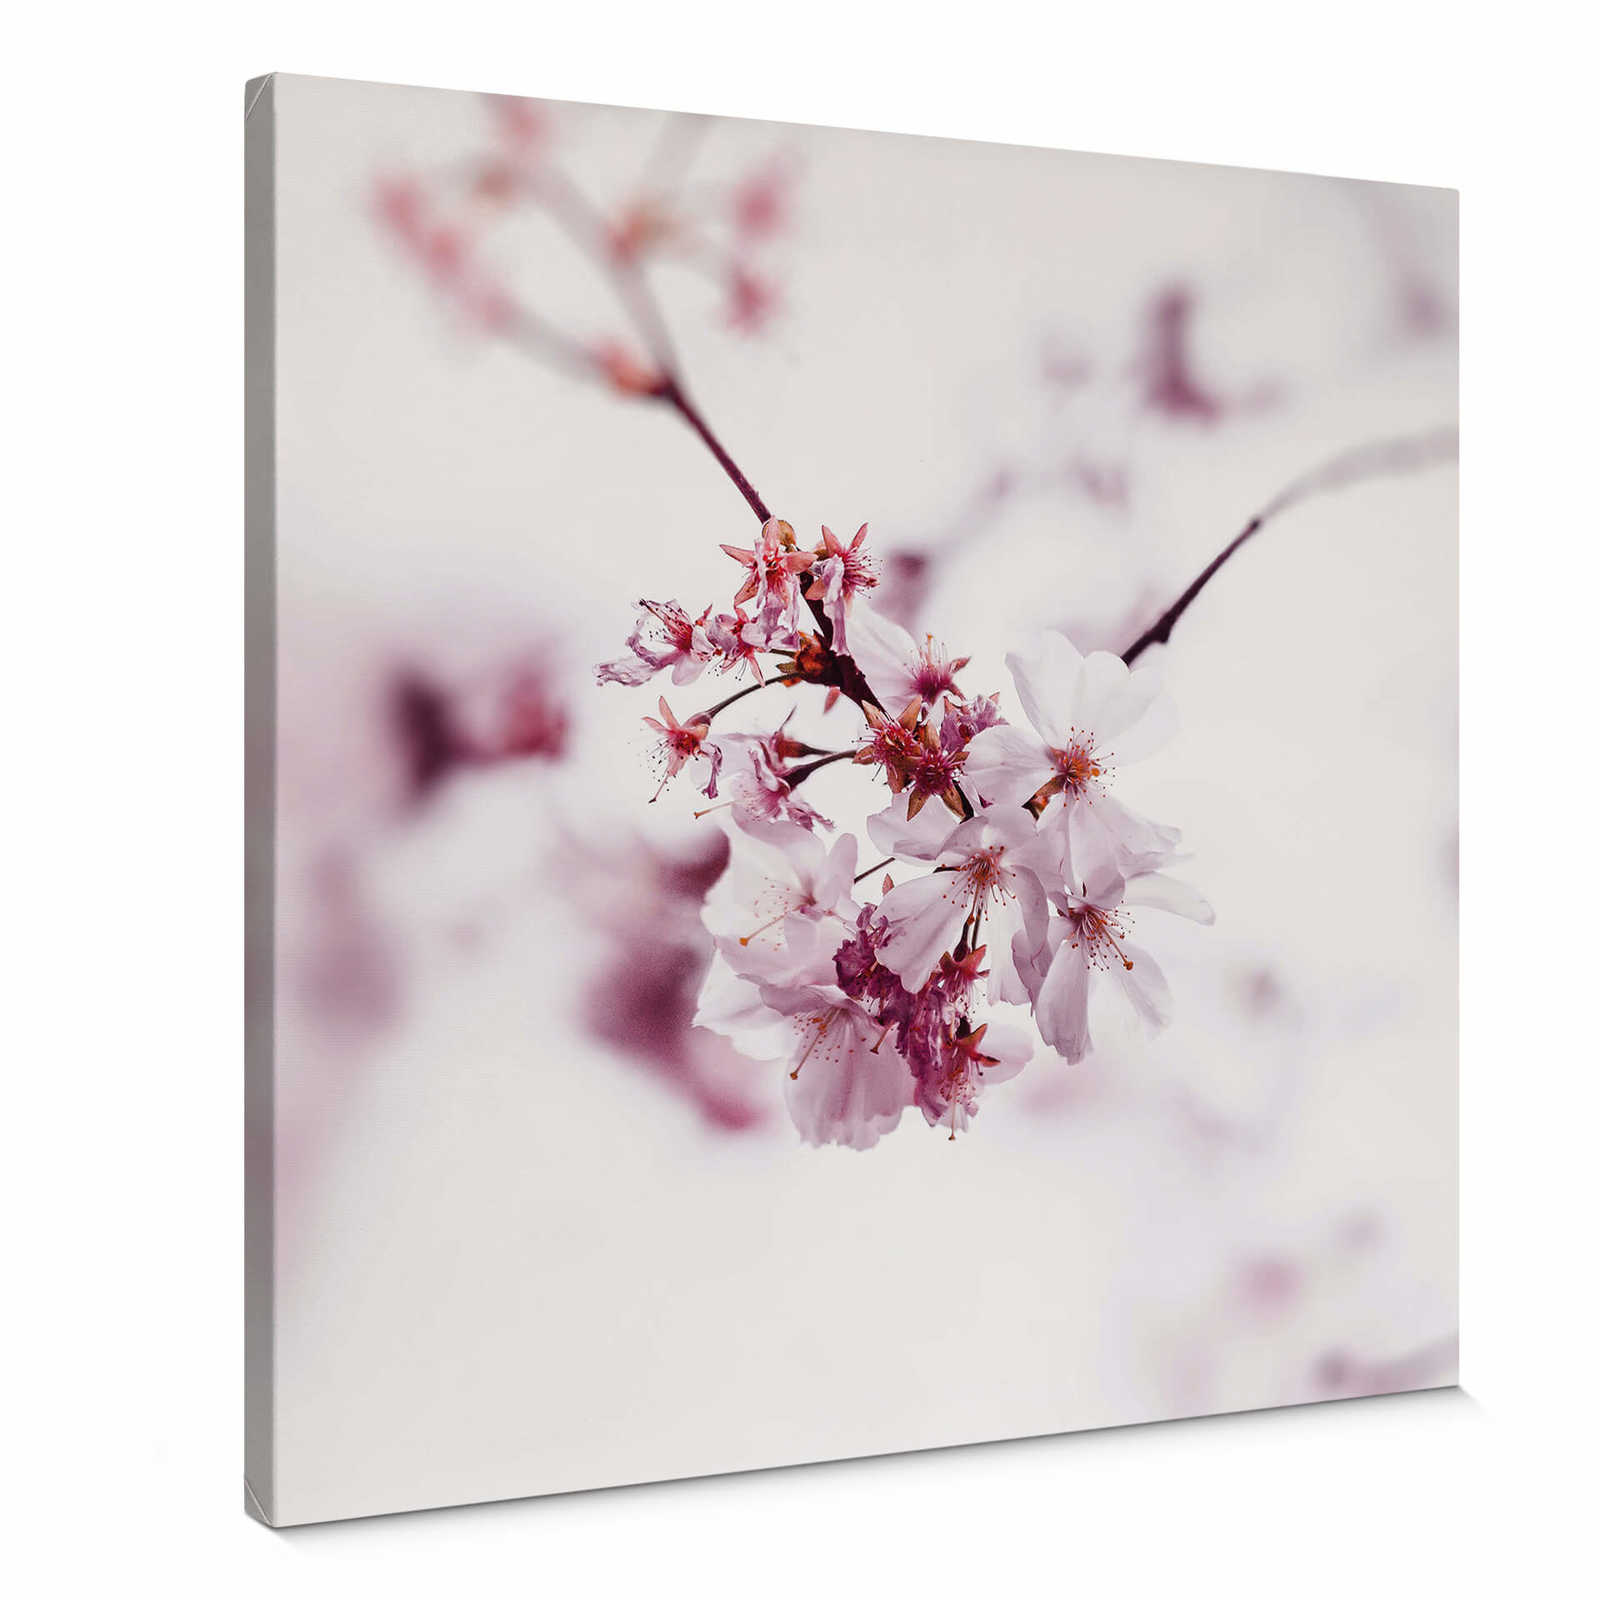         Kirschblüte auf quadratischem Leinwandbild – 0,50 m x 0,50 m
    